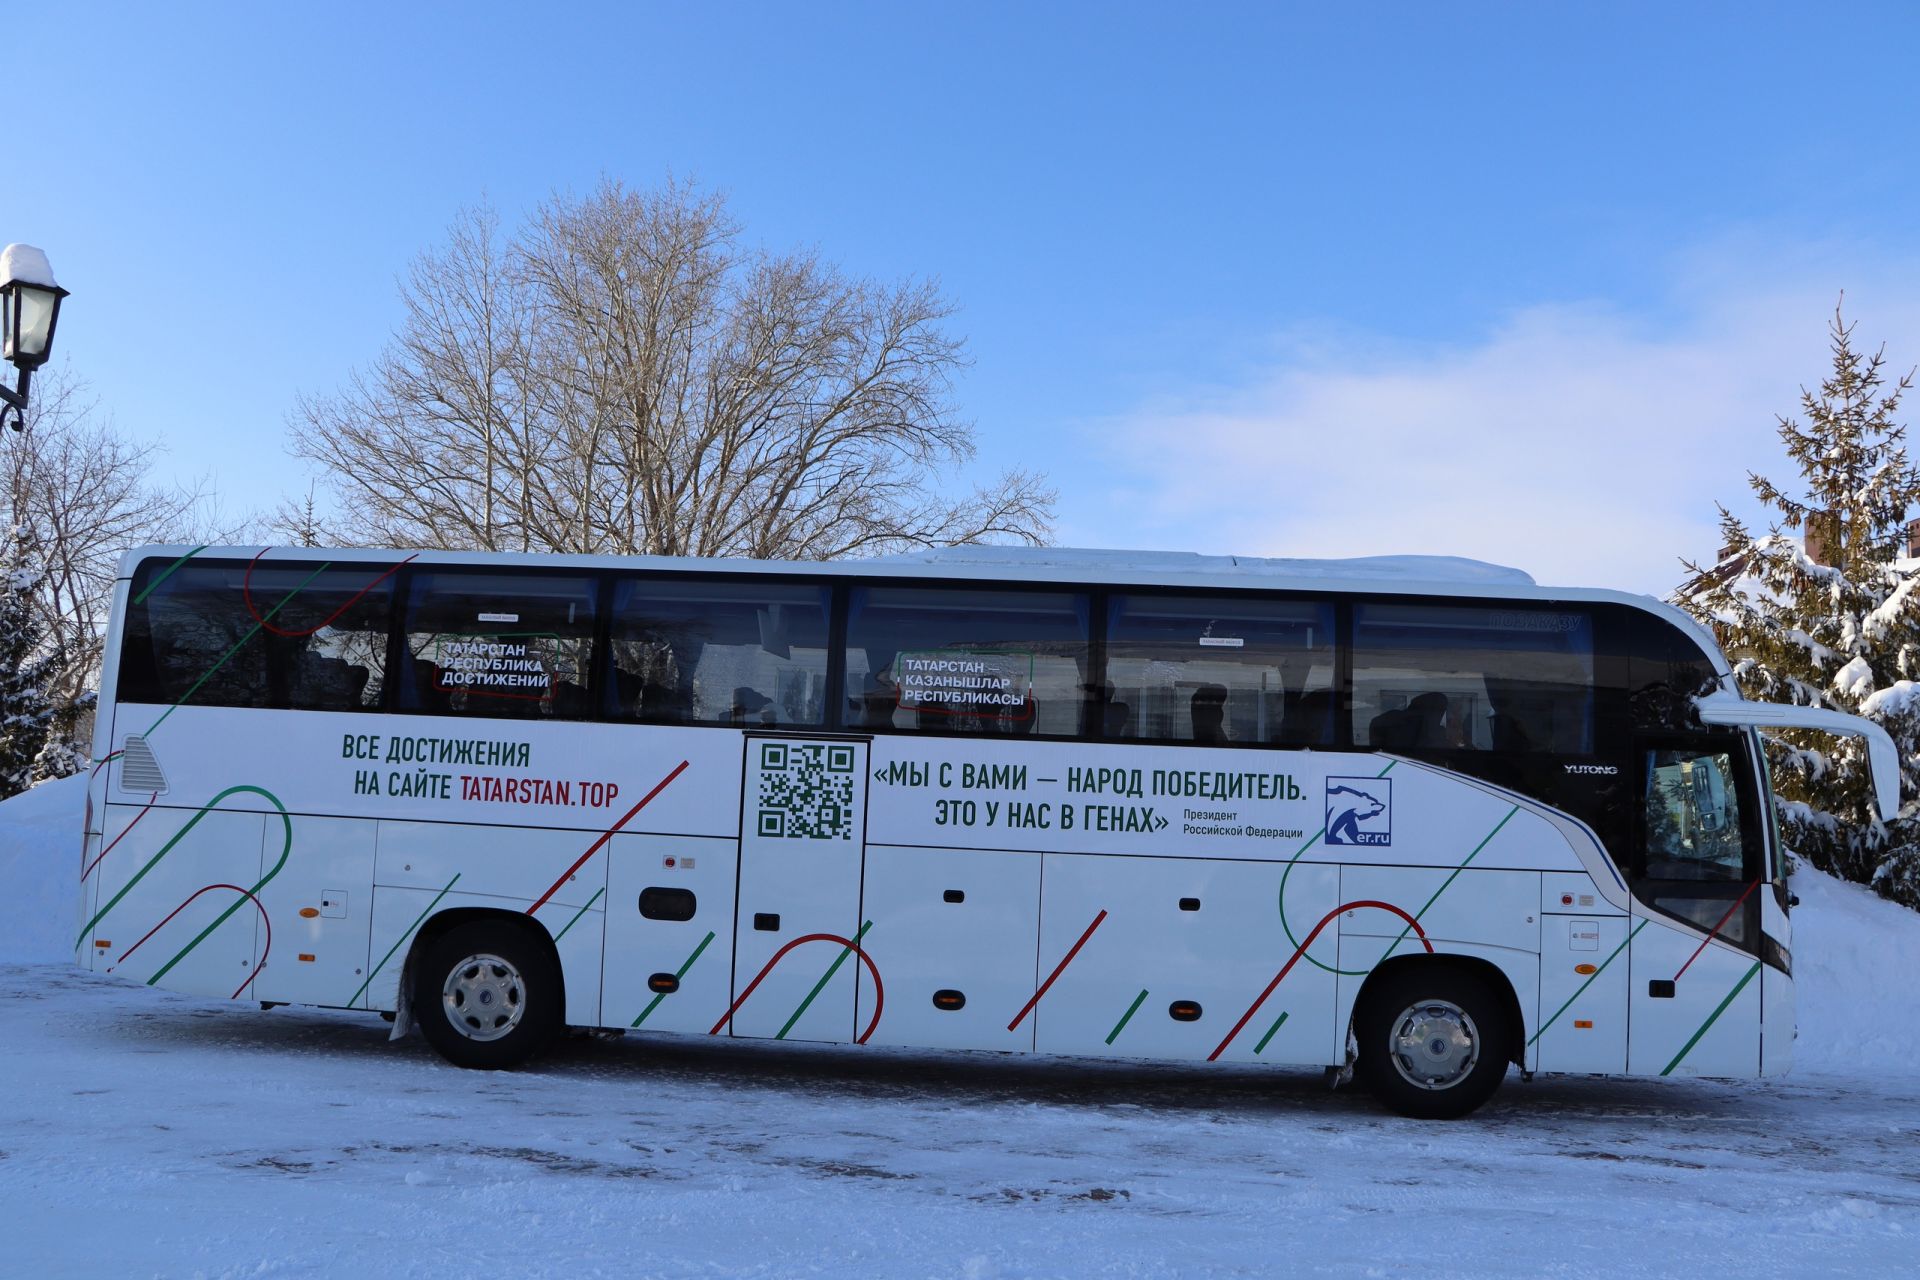 Апаска республика һәм Россия казанышлары турында сөйләүче автобус марафоны килде